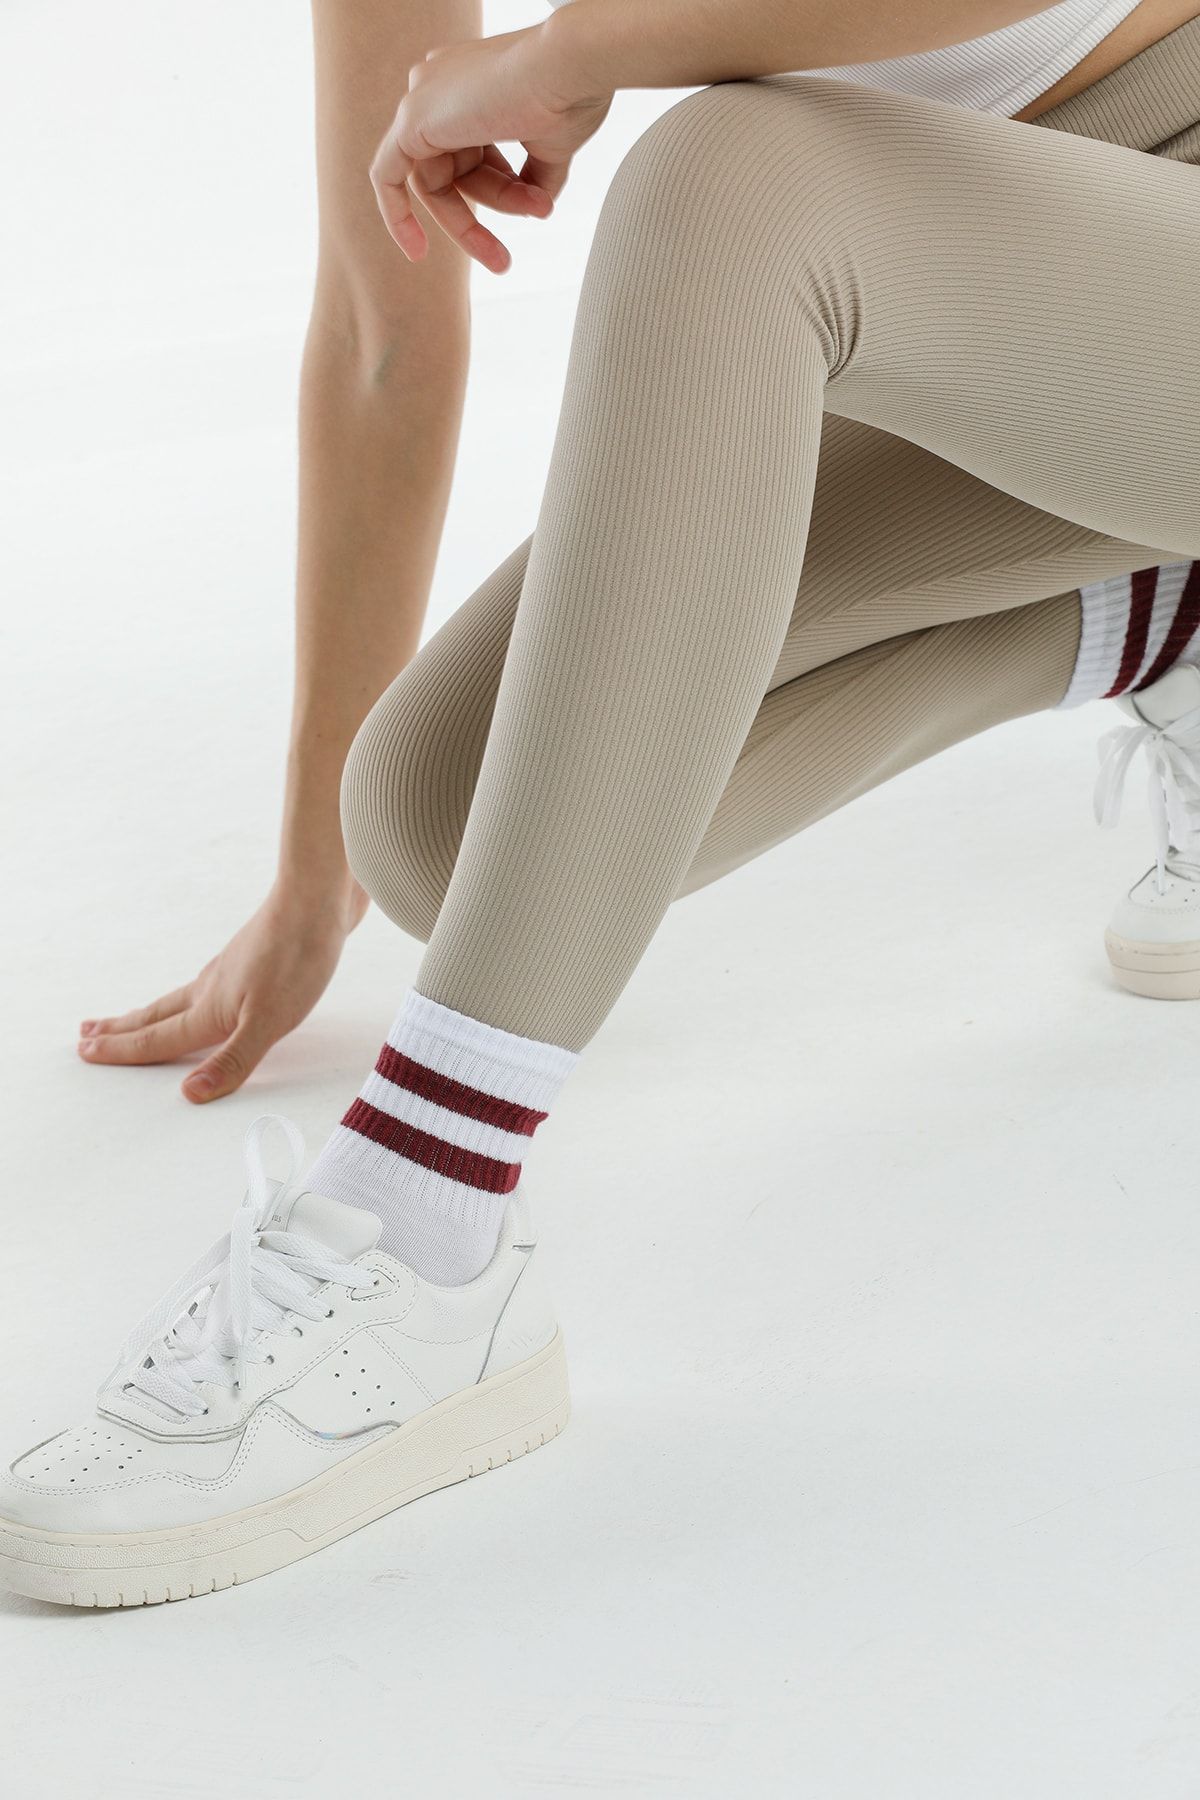 Beyaz Külotlu Çorapları Kombinlemenin 5 Farklı Yolu